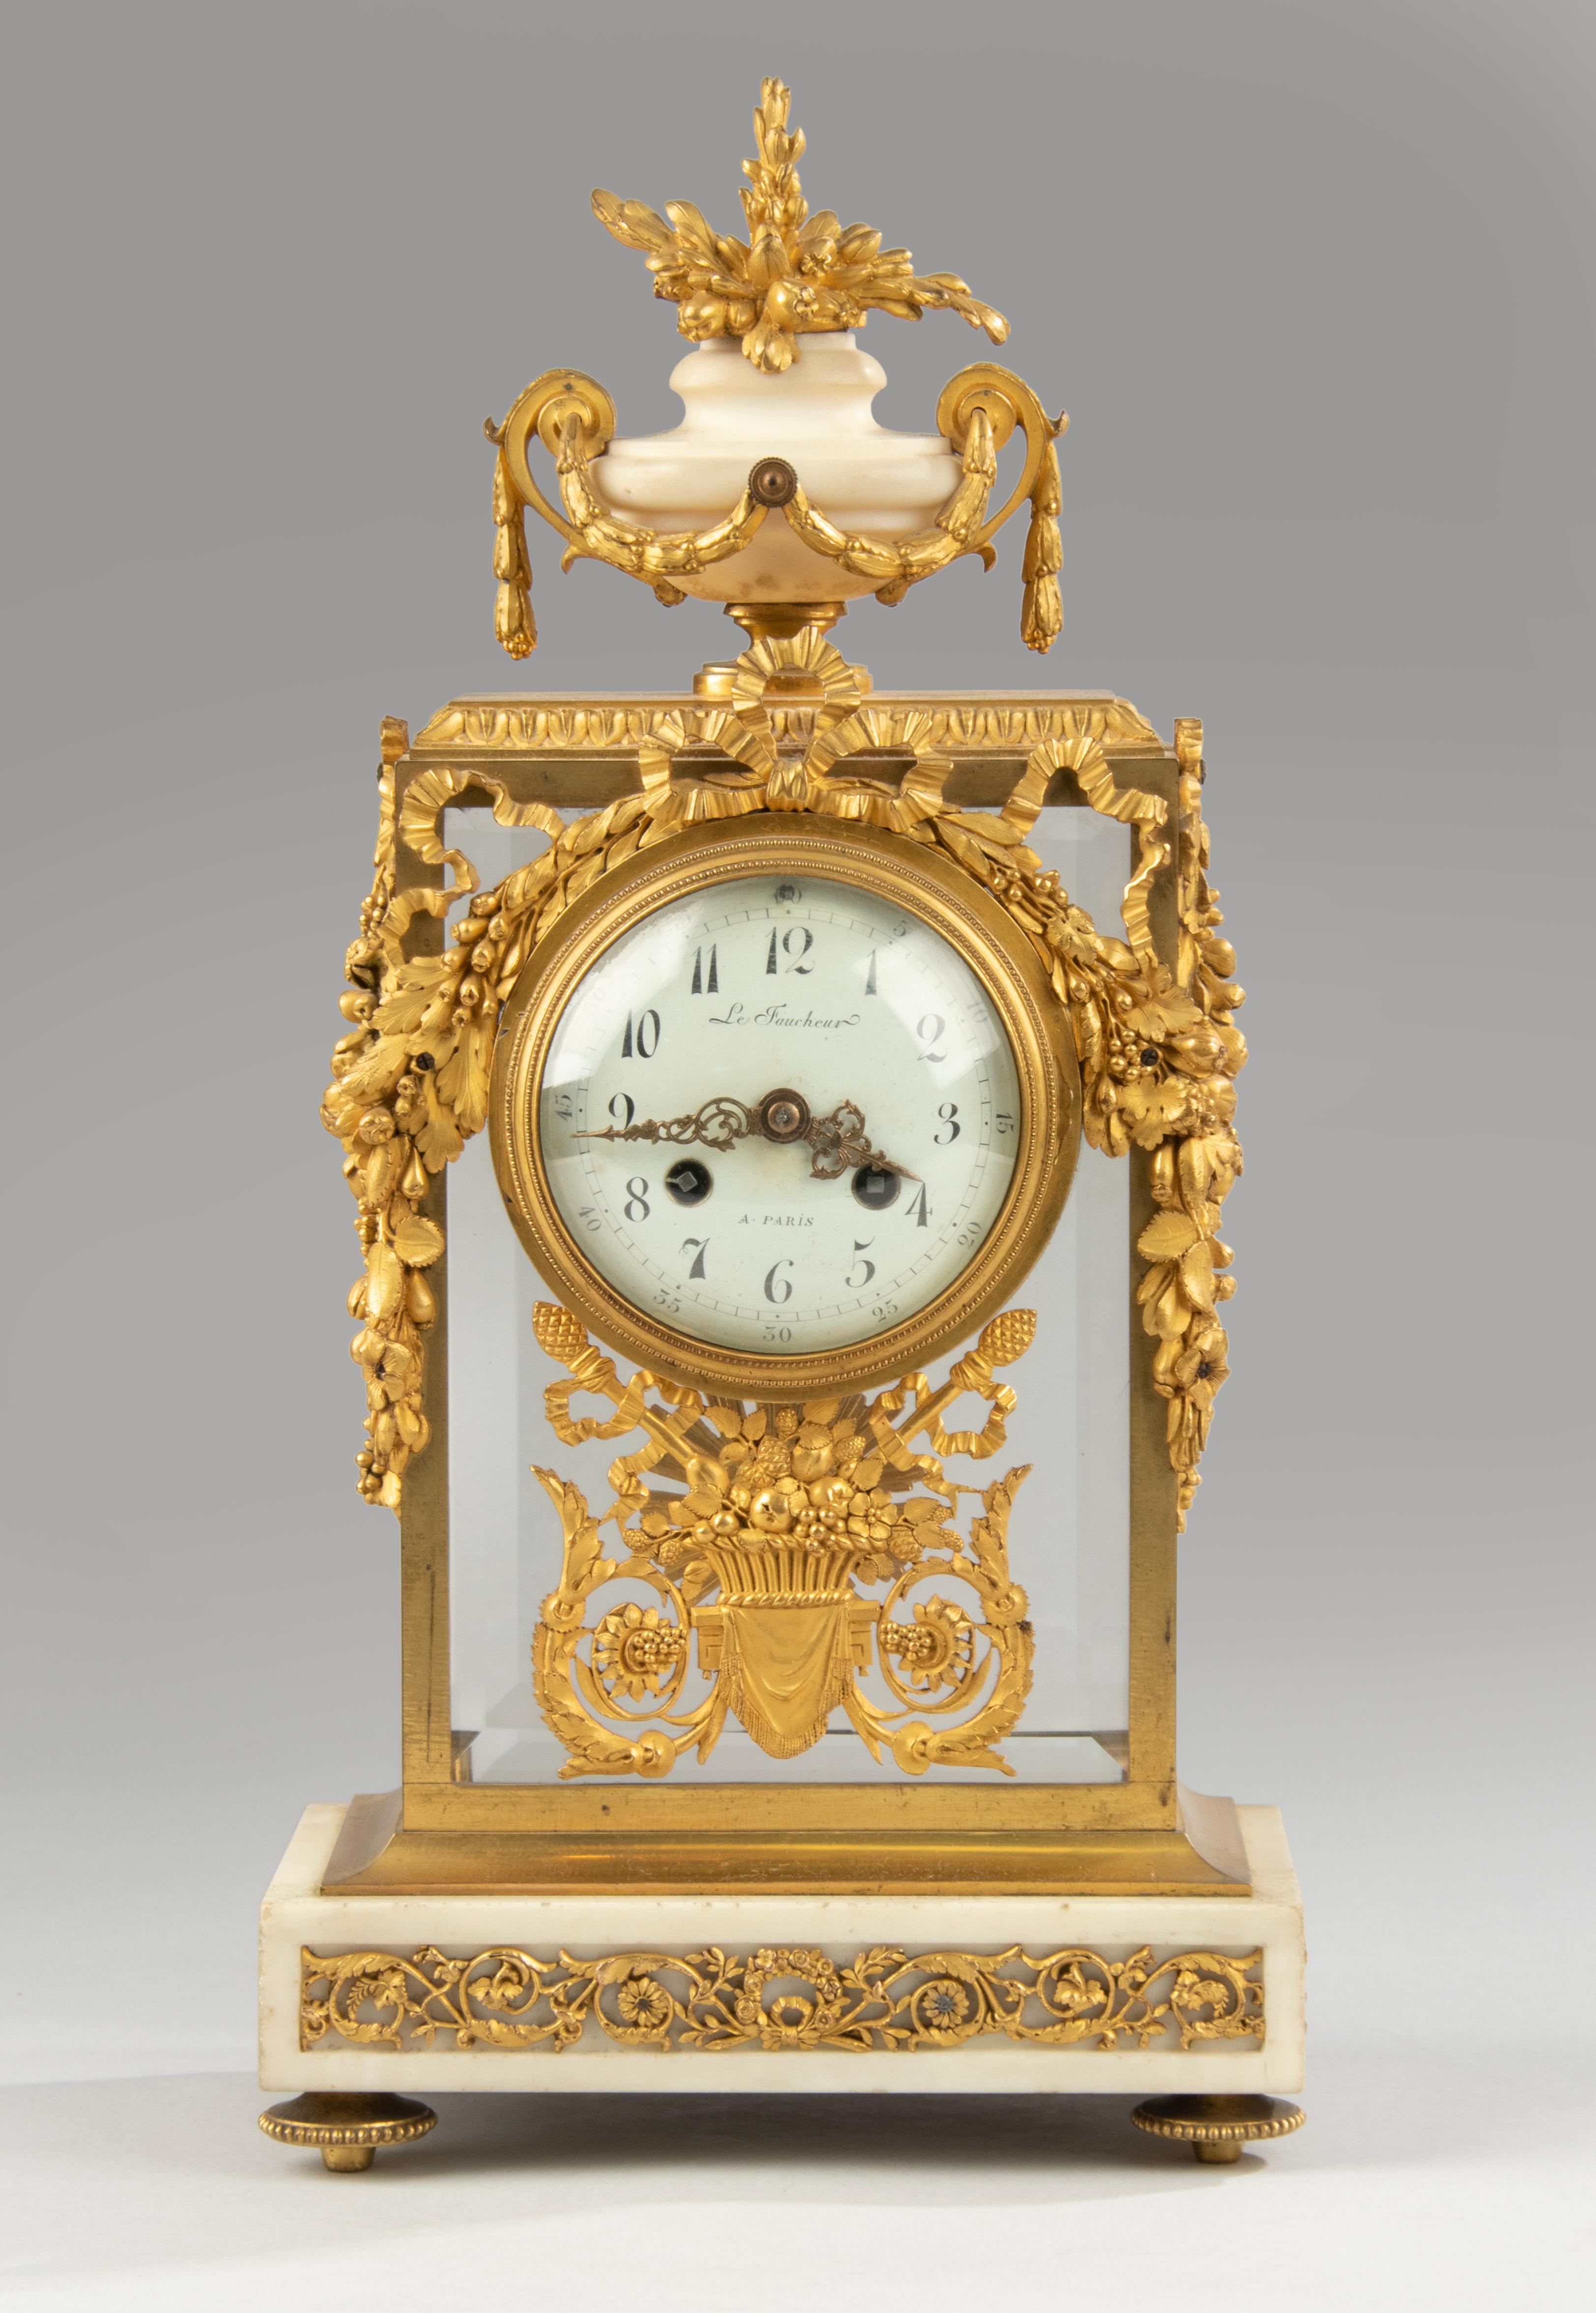 Ein feines Bronze feuervergoldet Ormolu Kaminsims Uhr mit passenden Kandelaber gesetzt. Reich verziert mit typischen Louis XVI-Beschlägen, Blumengirlanden, Schriftrollen, Bändern und Schleifen. Das Gehäuse ist aus vergoldetem Messing mit rundum